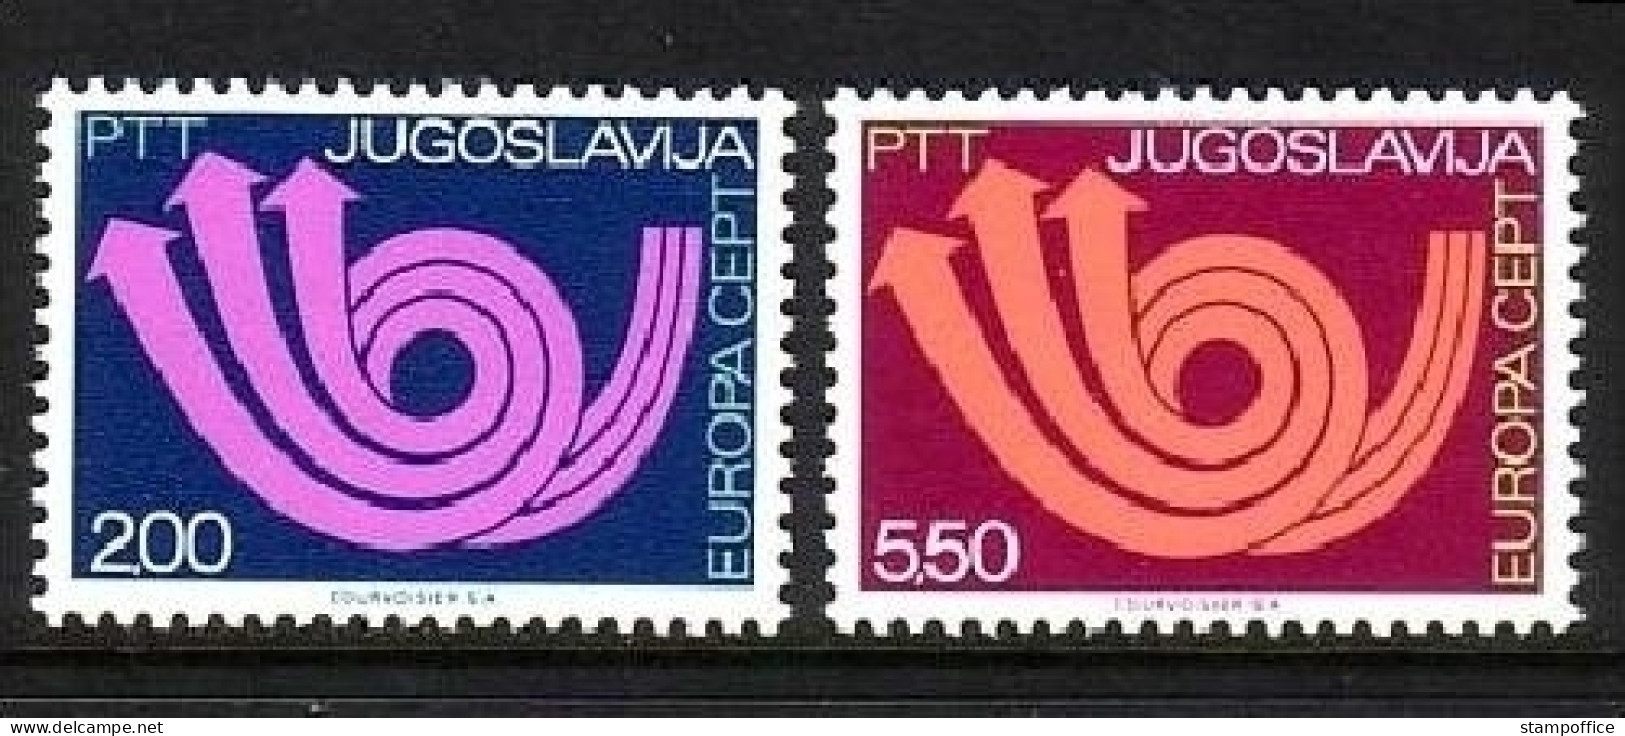 JUGOSLAWIEN MI-NR. 1507-1508 POSTFRISCH(MINT) EUROPA 1973 POSTHORN - 1973